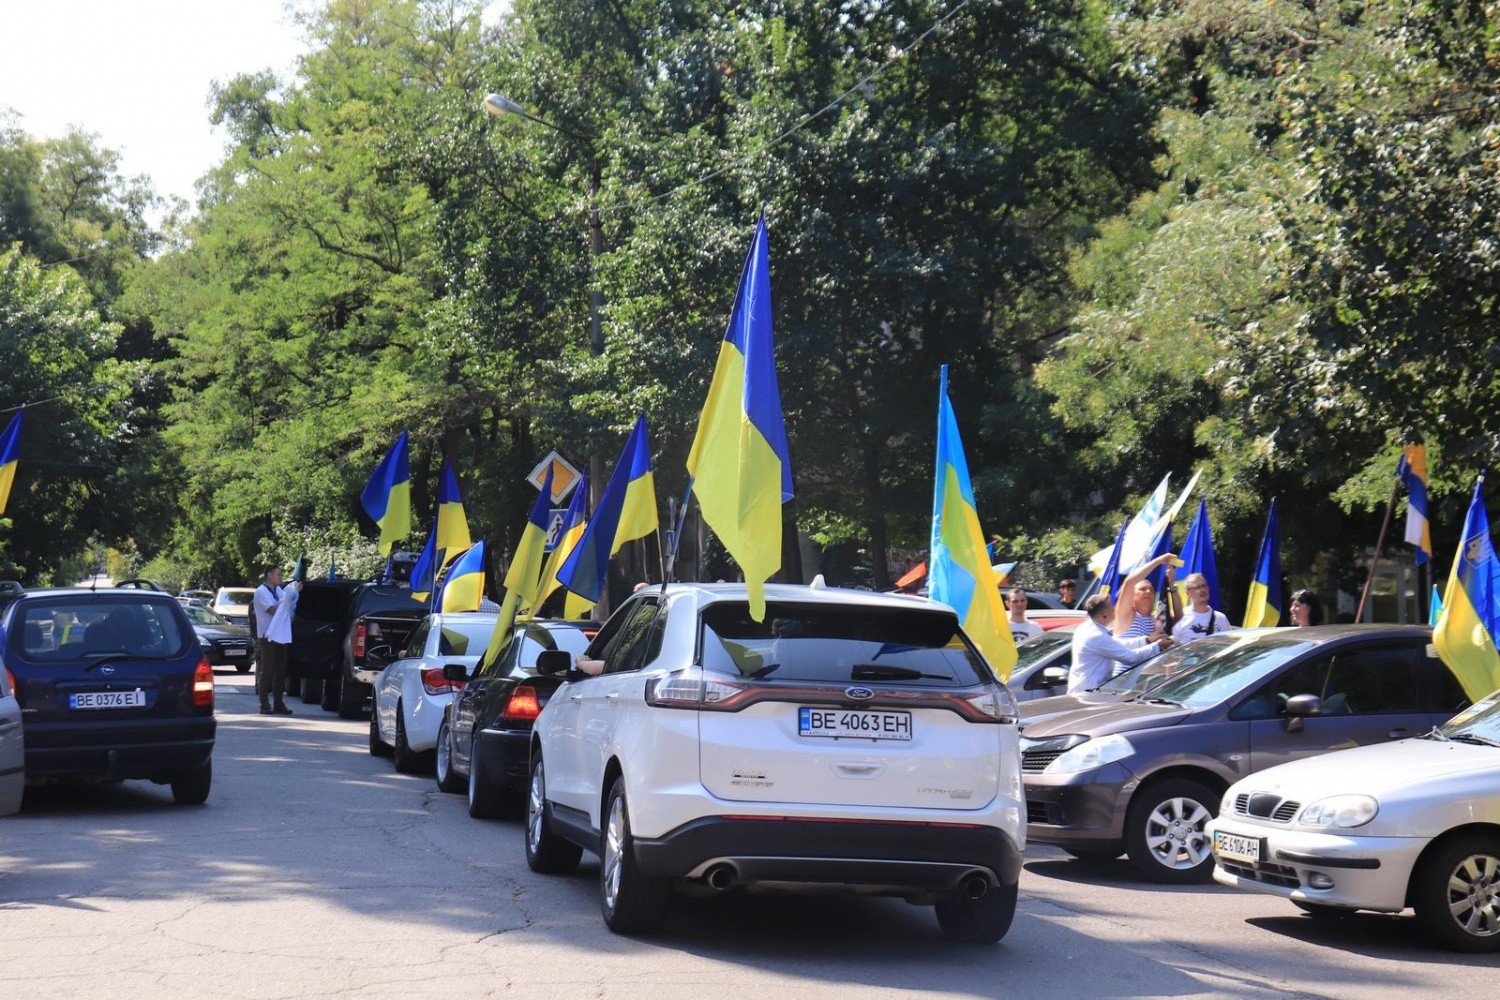 Uzmanību zibakcija! Auto Brīvības brauciens ar Ukrainas karogiem gar Krievijas vēstniecību. Aicināti visi! (Bilde 2)